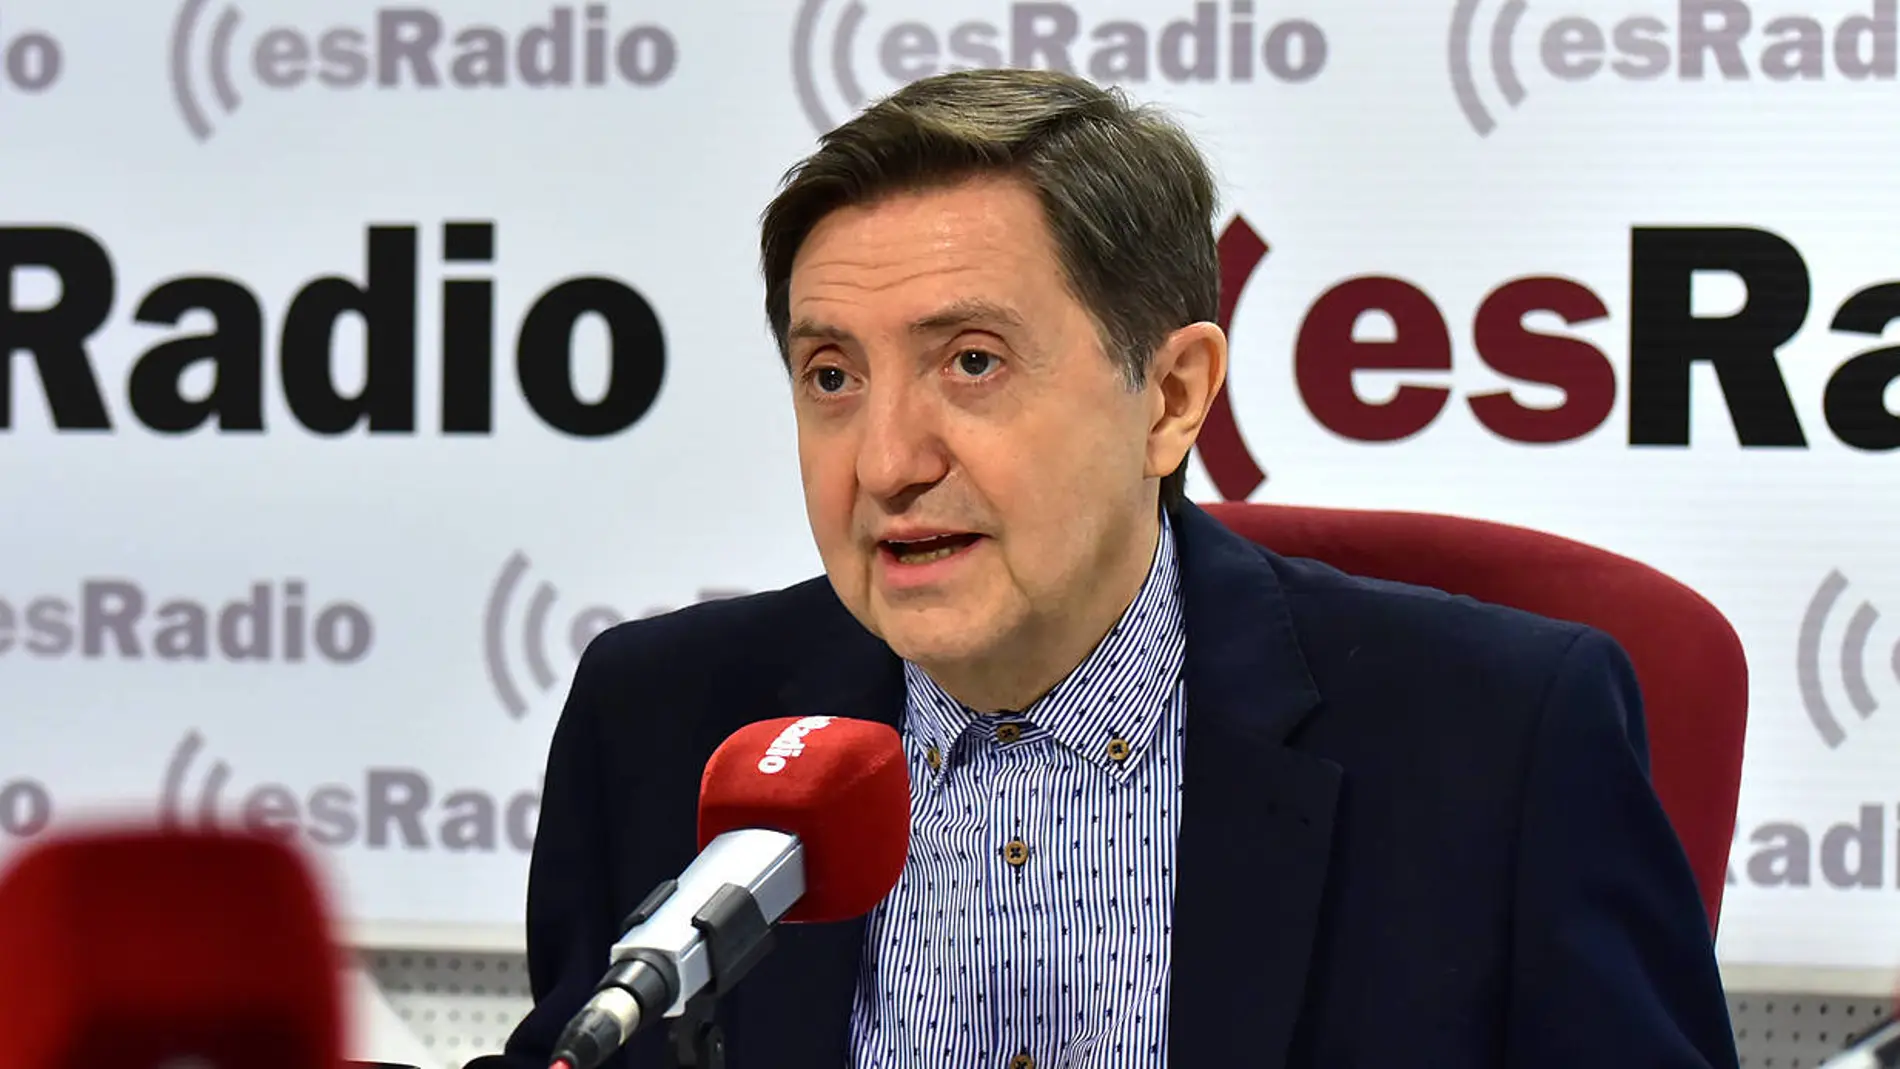 El periodista Federico Jiménez Losantos, en su programa en esRadio